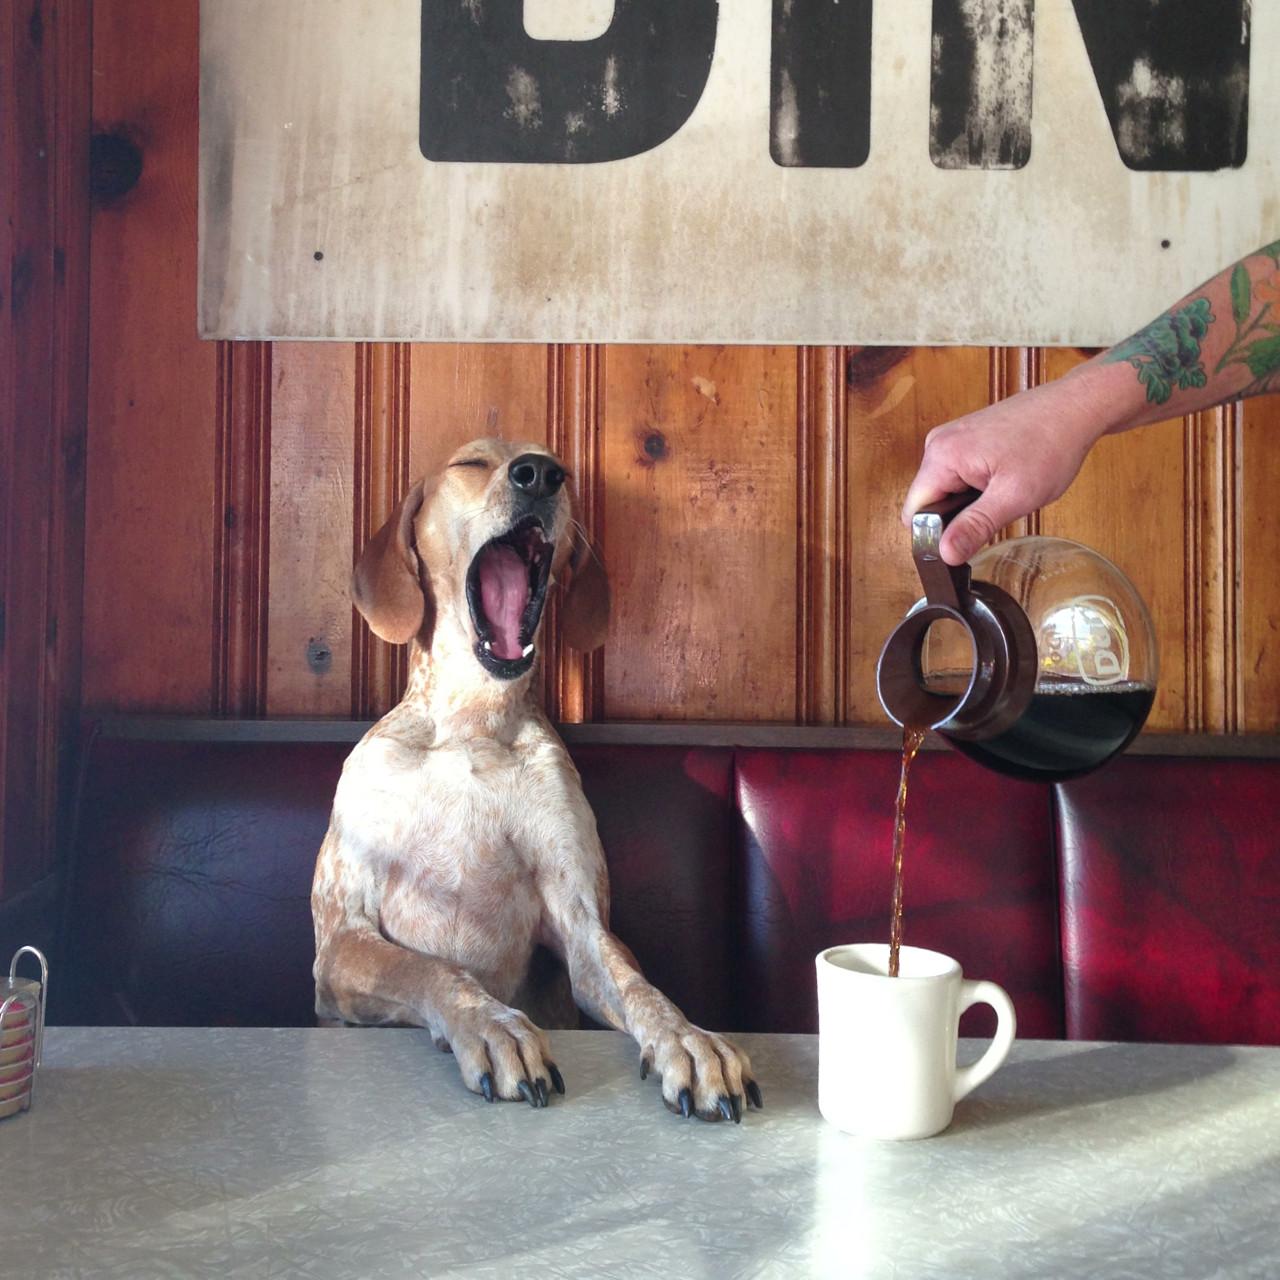 Coffee Dog Yawn Tired Blank Meme Template